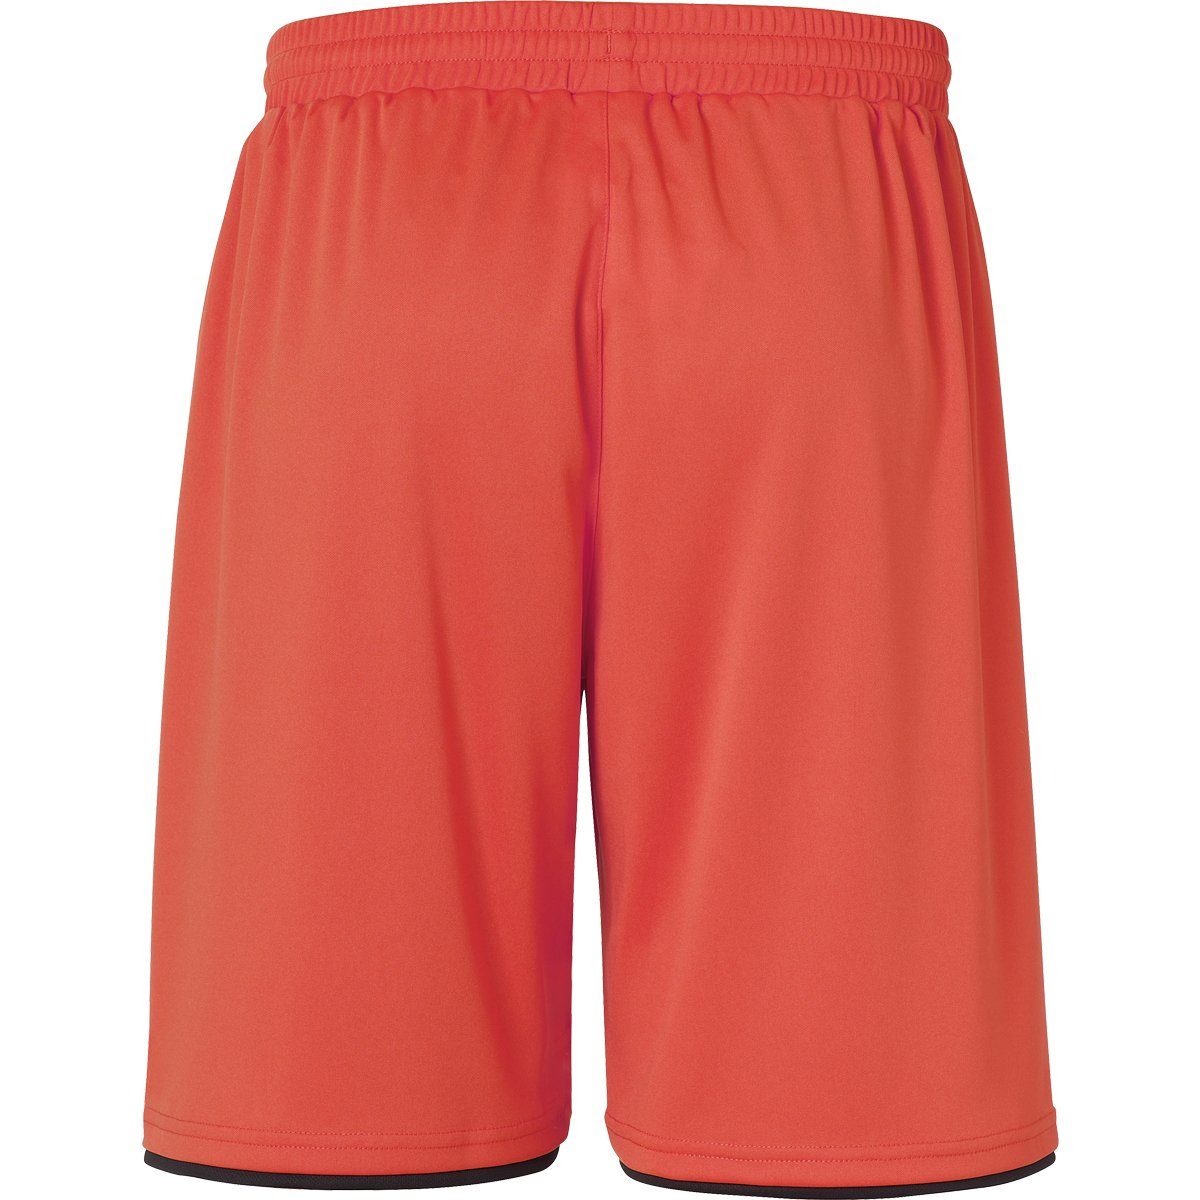 Shorts uhlsport rot/marine fluo uhlsport Shorts